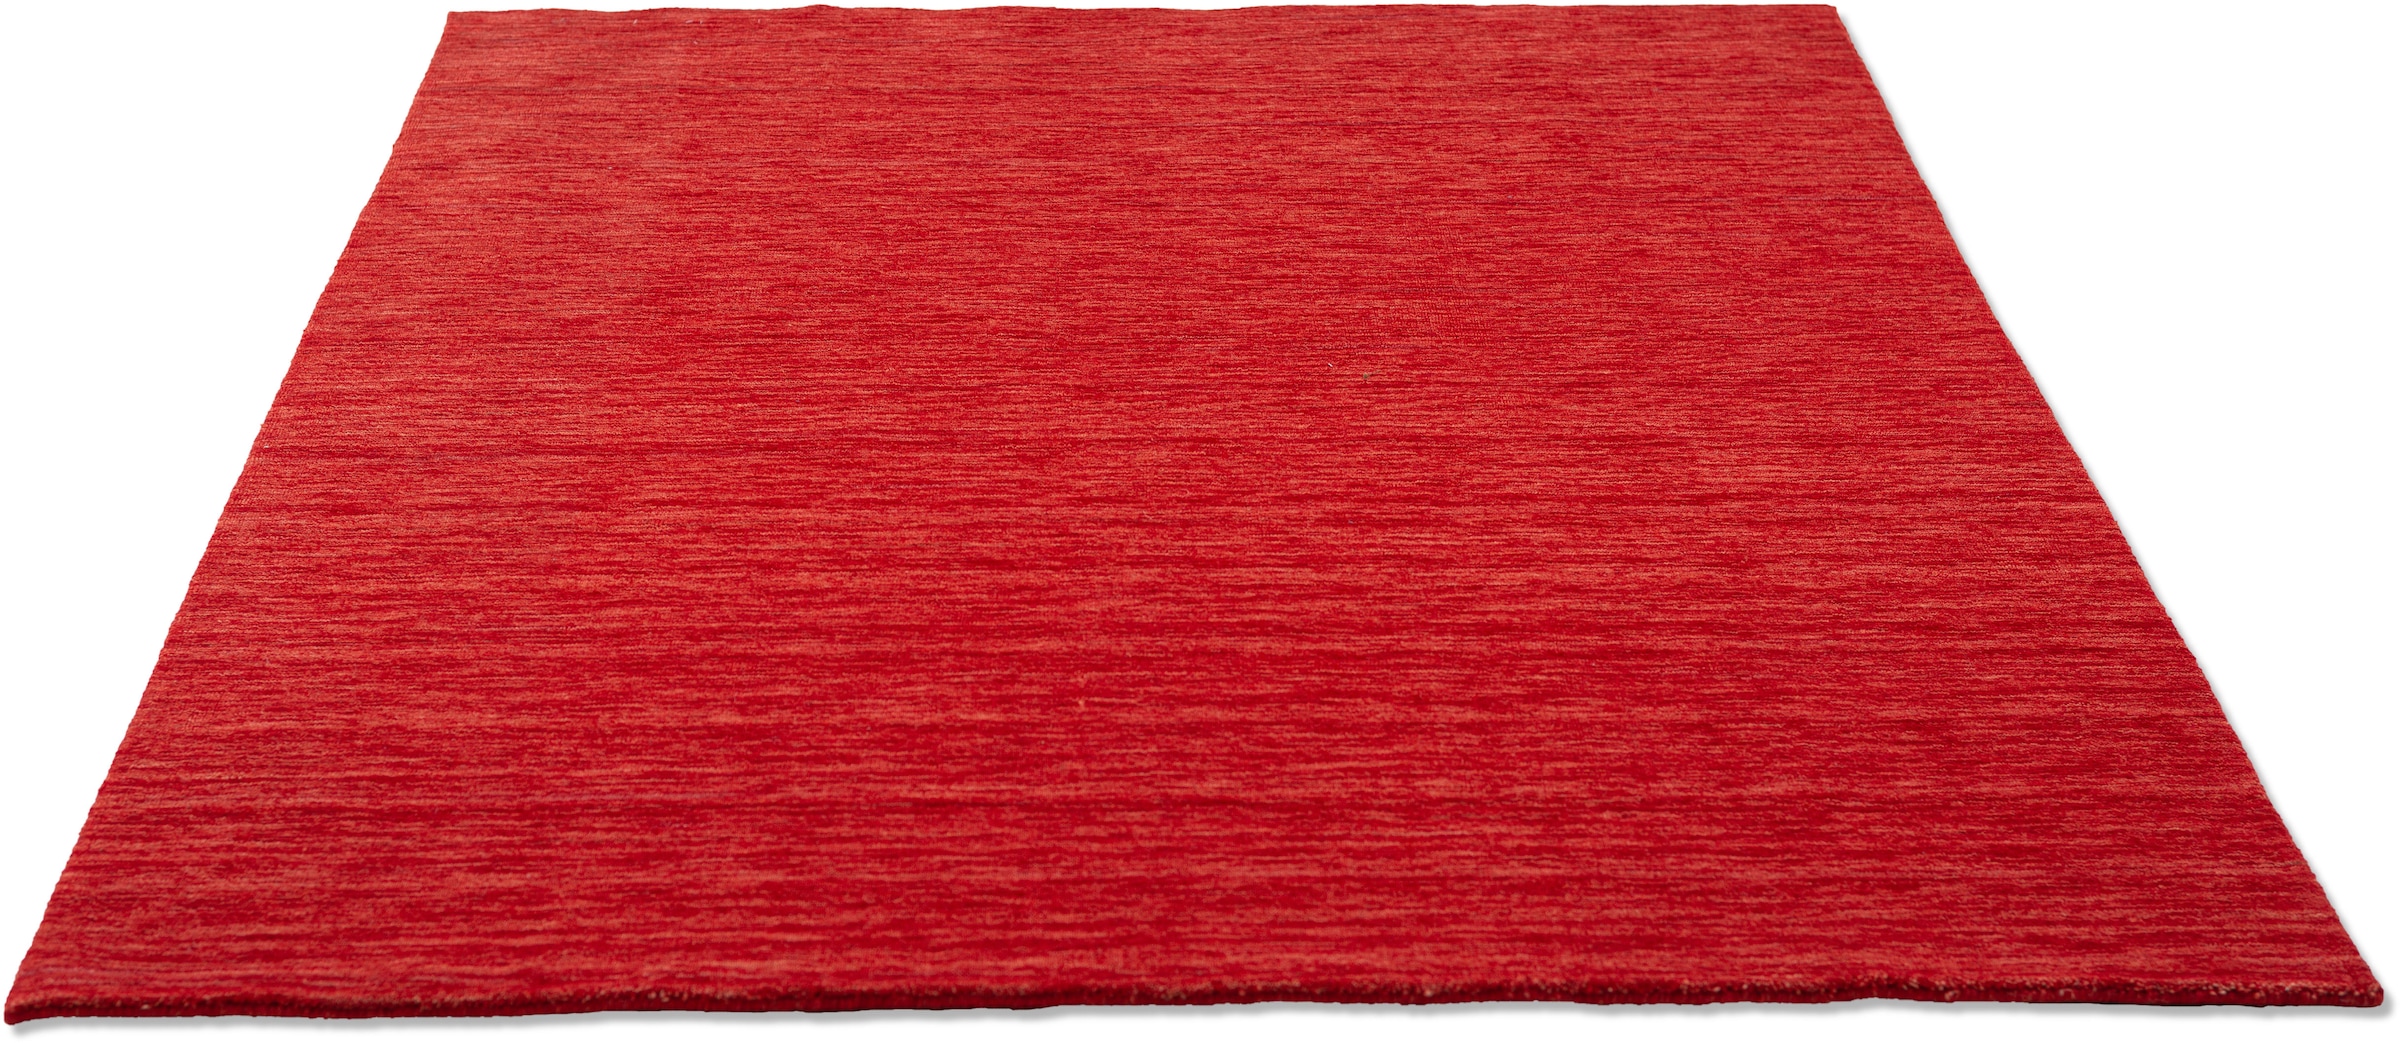 THEKO Wollteppich "Holi", rechteckig, Uni-Farben, leicht meliert, reine Wolle, handgewebt mit Knüpfoptik